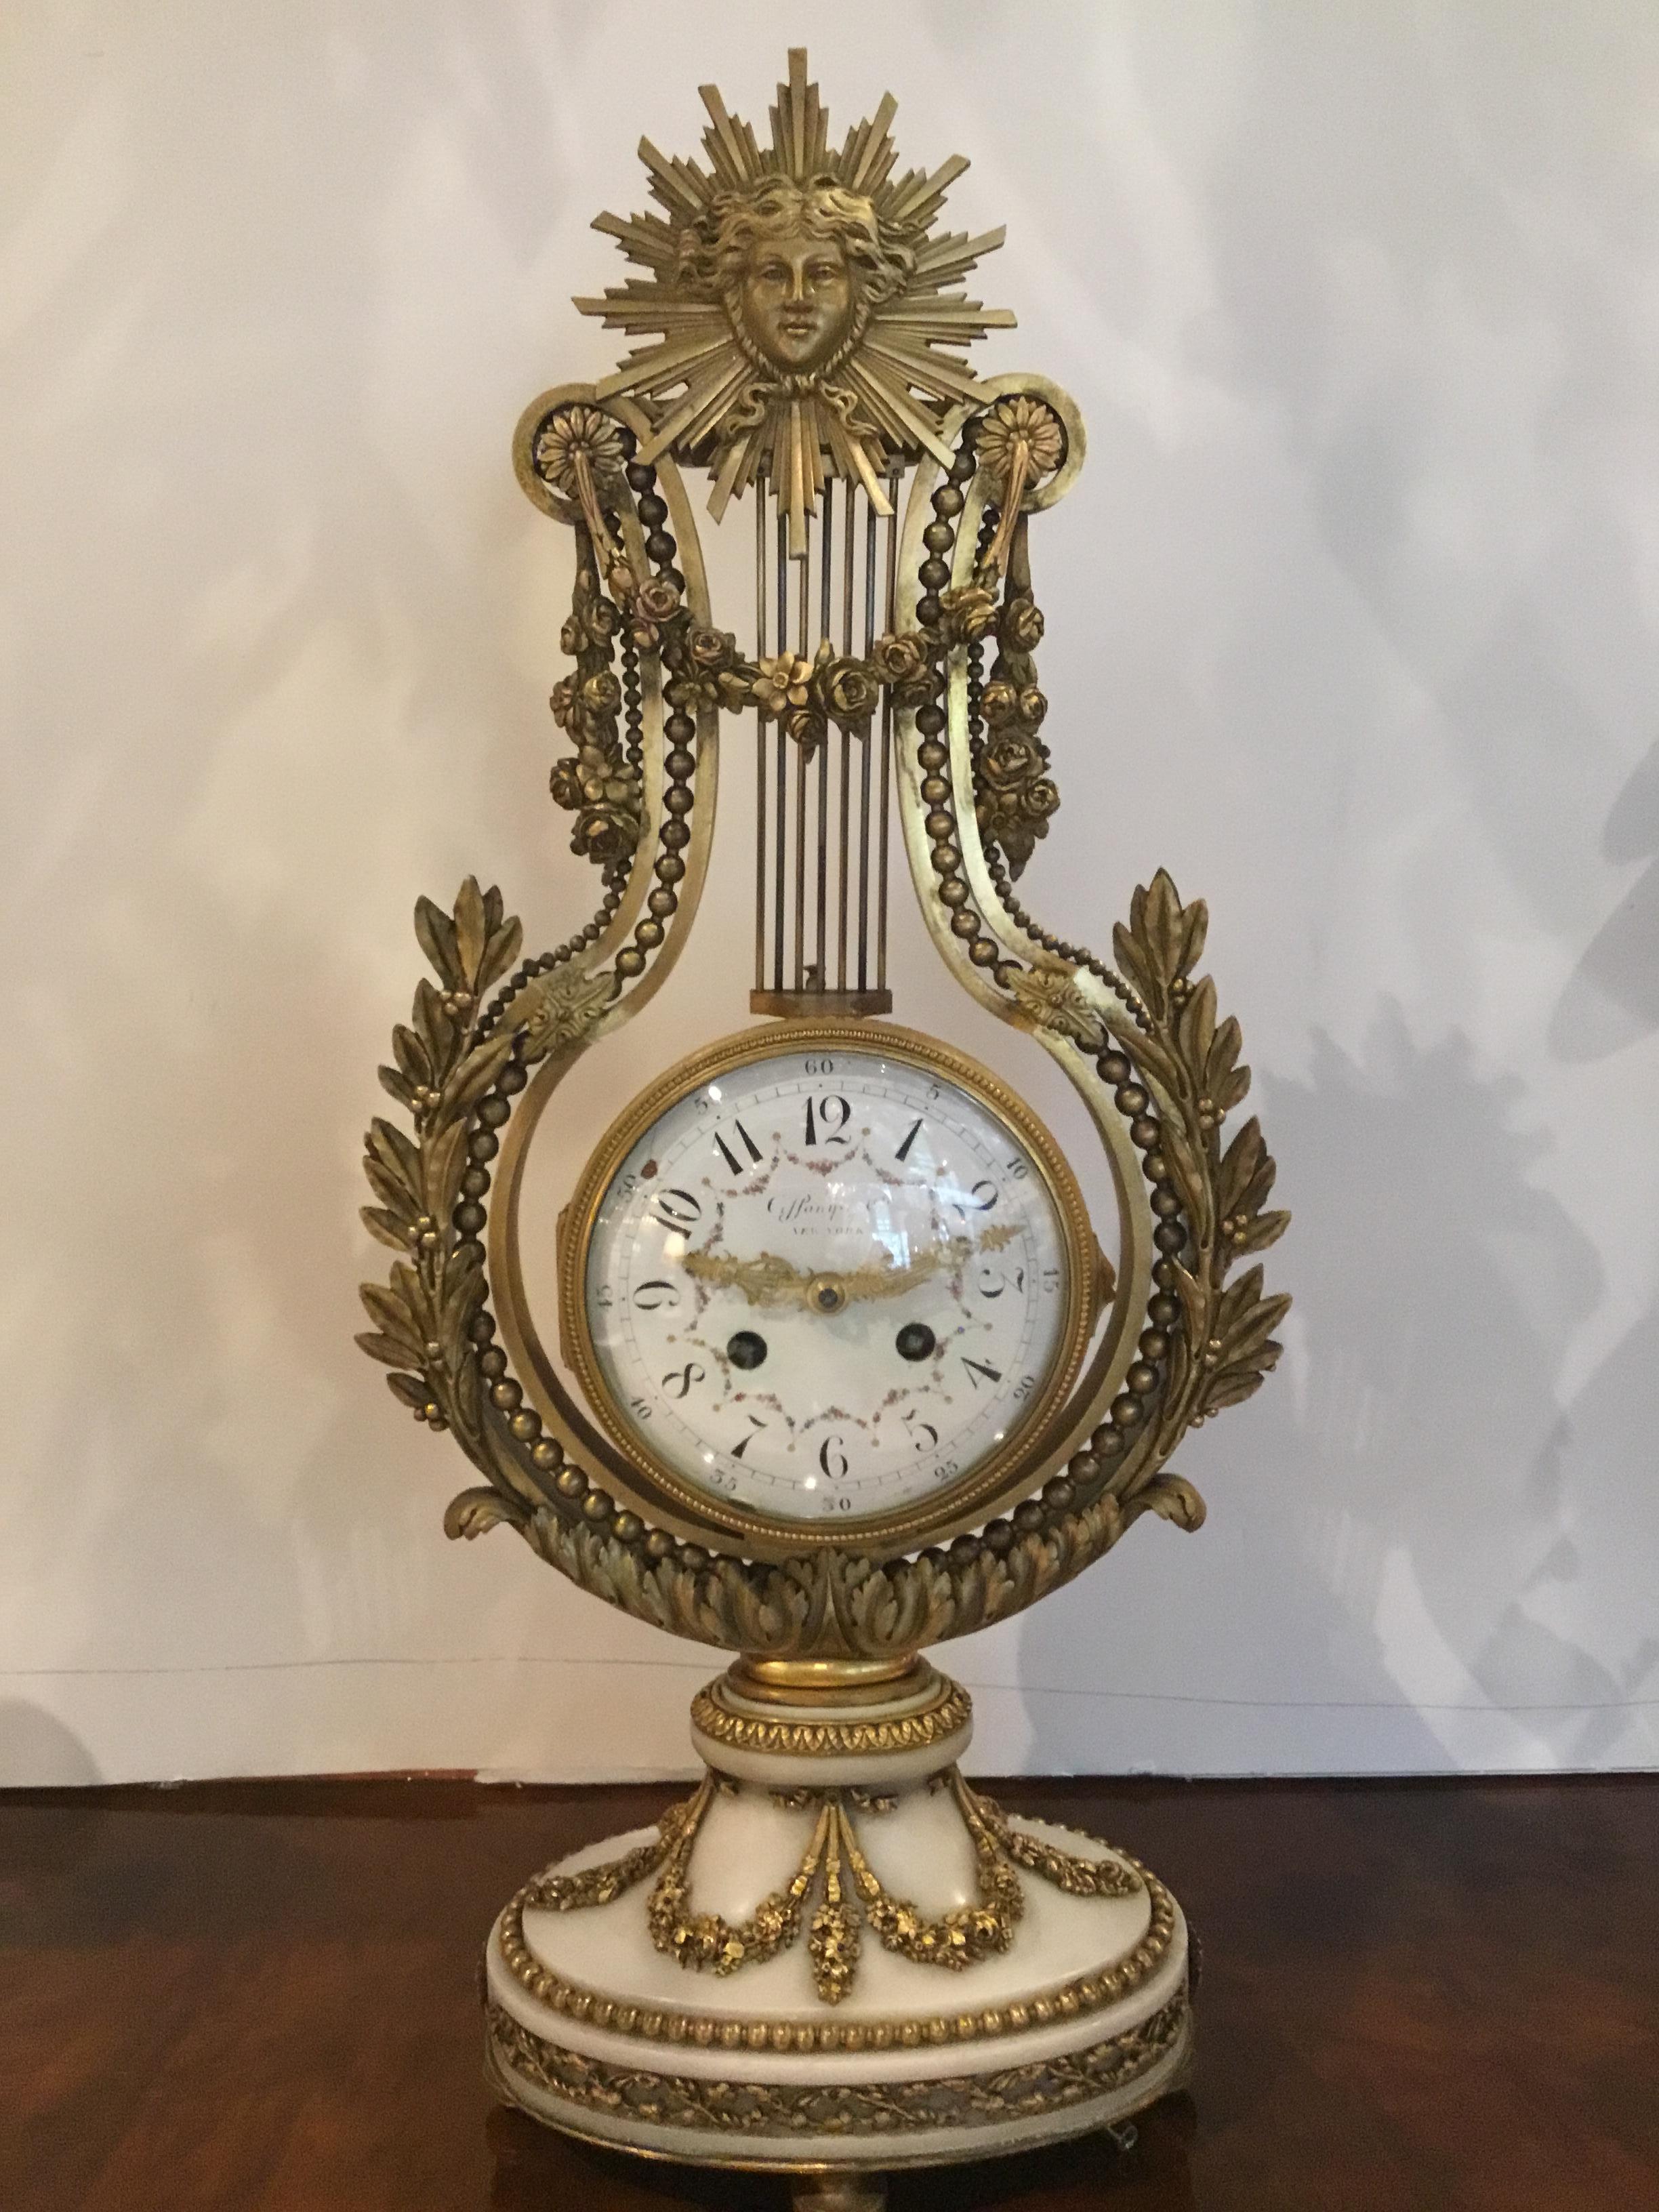 Französisch Weißer Marmor und Bronze dore Garnitur für G J Payne gemacht
Co. New York, hergestellt von einem Pariser Uhrmacher, 19. Jahrhundert. Das Set besteht aus
Eine Uhr mit einer vergoldeten Bronzemaske, drapiert mit Girlanden. Ein